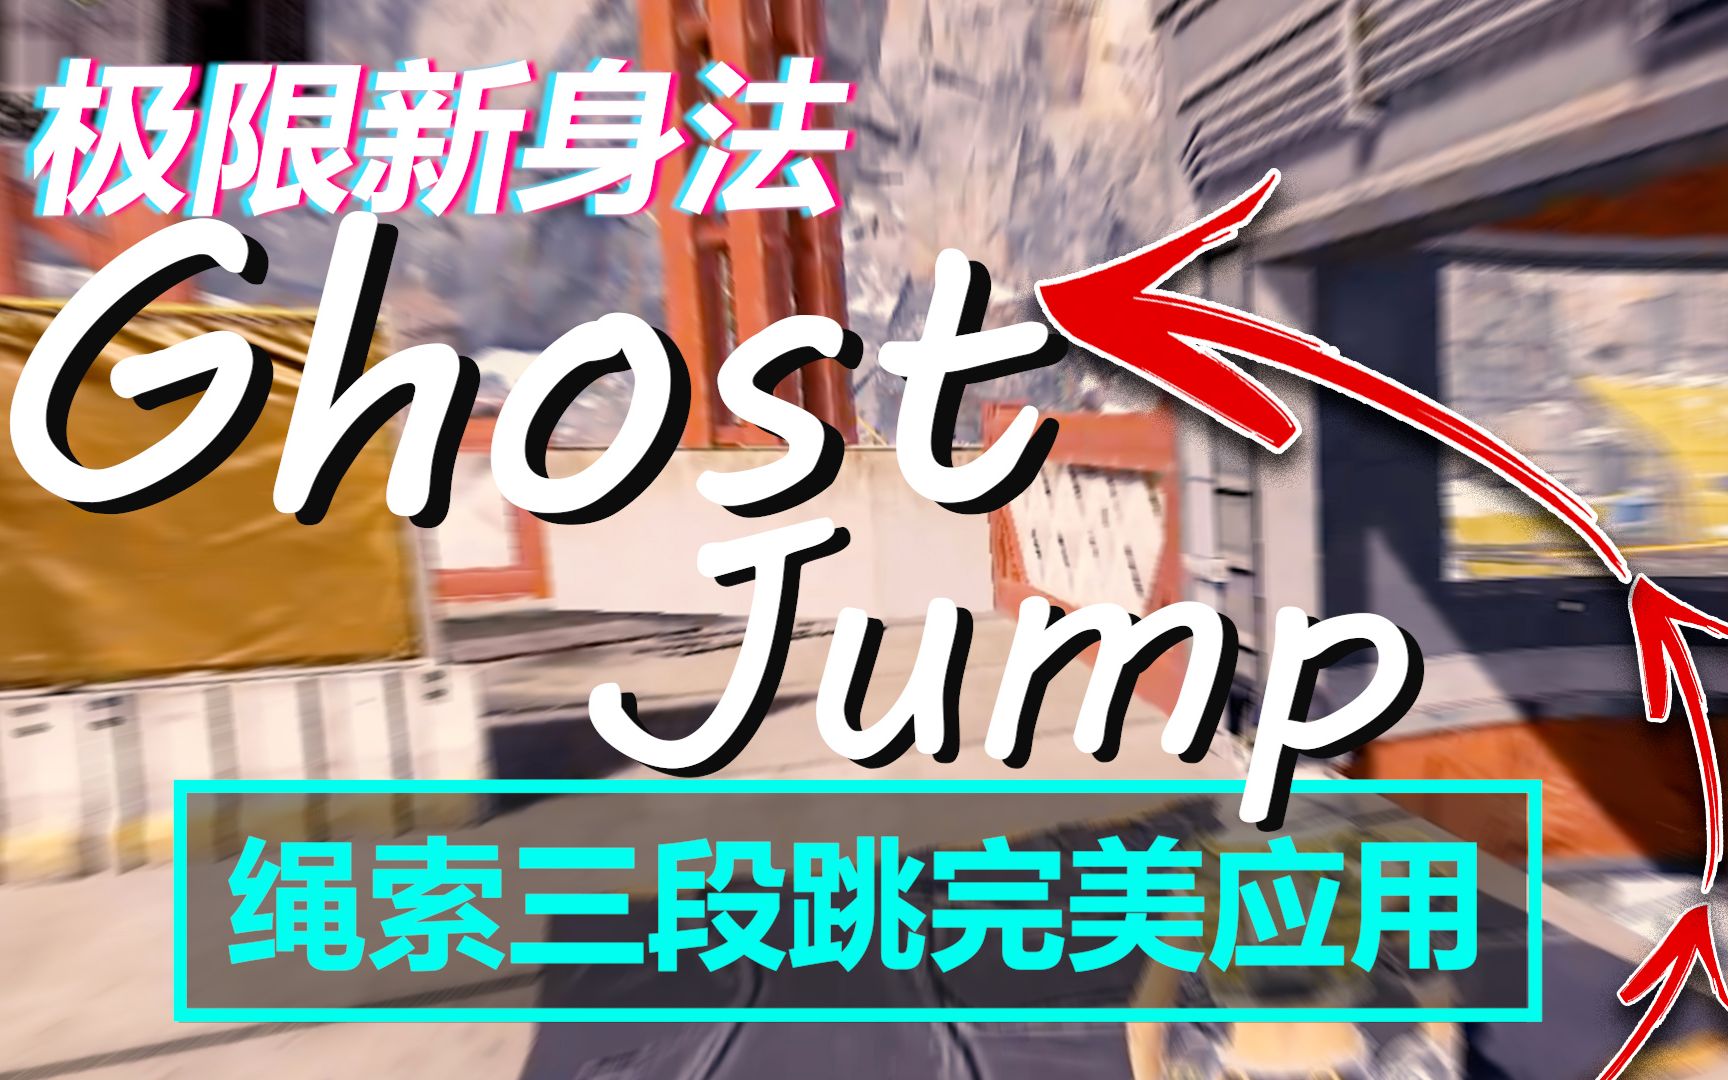 极限三段跳！新身法Ghost-Jump教学 | Apex Legends S15 | mimo咪摸 | 本人上传非搬运